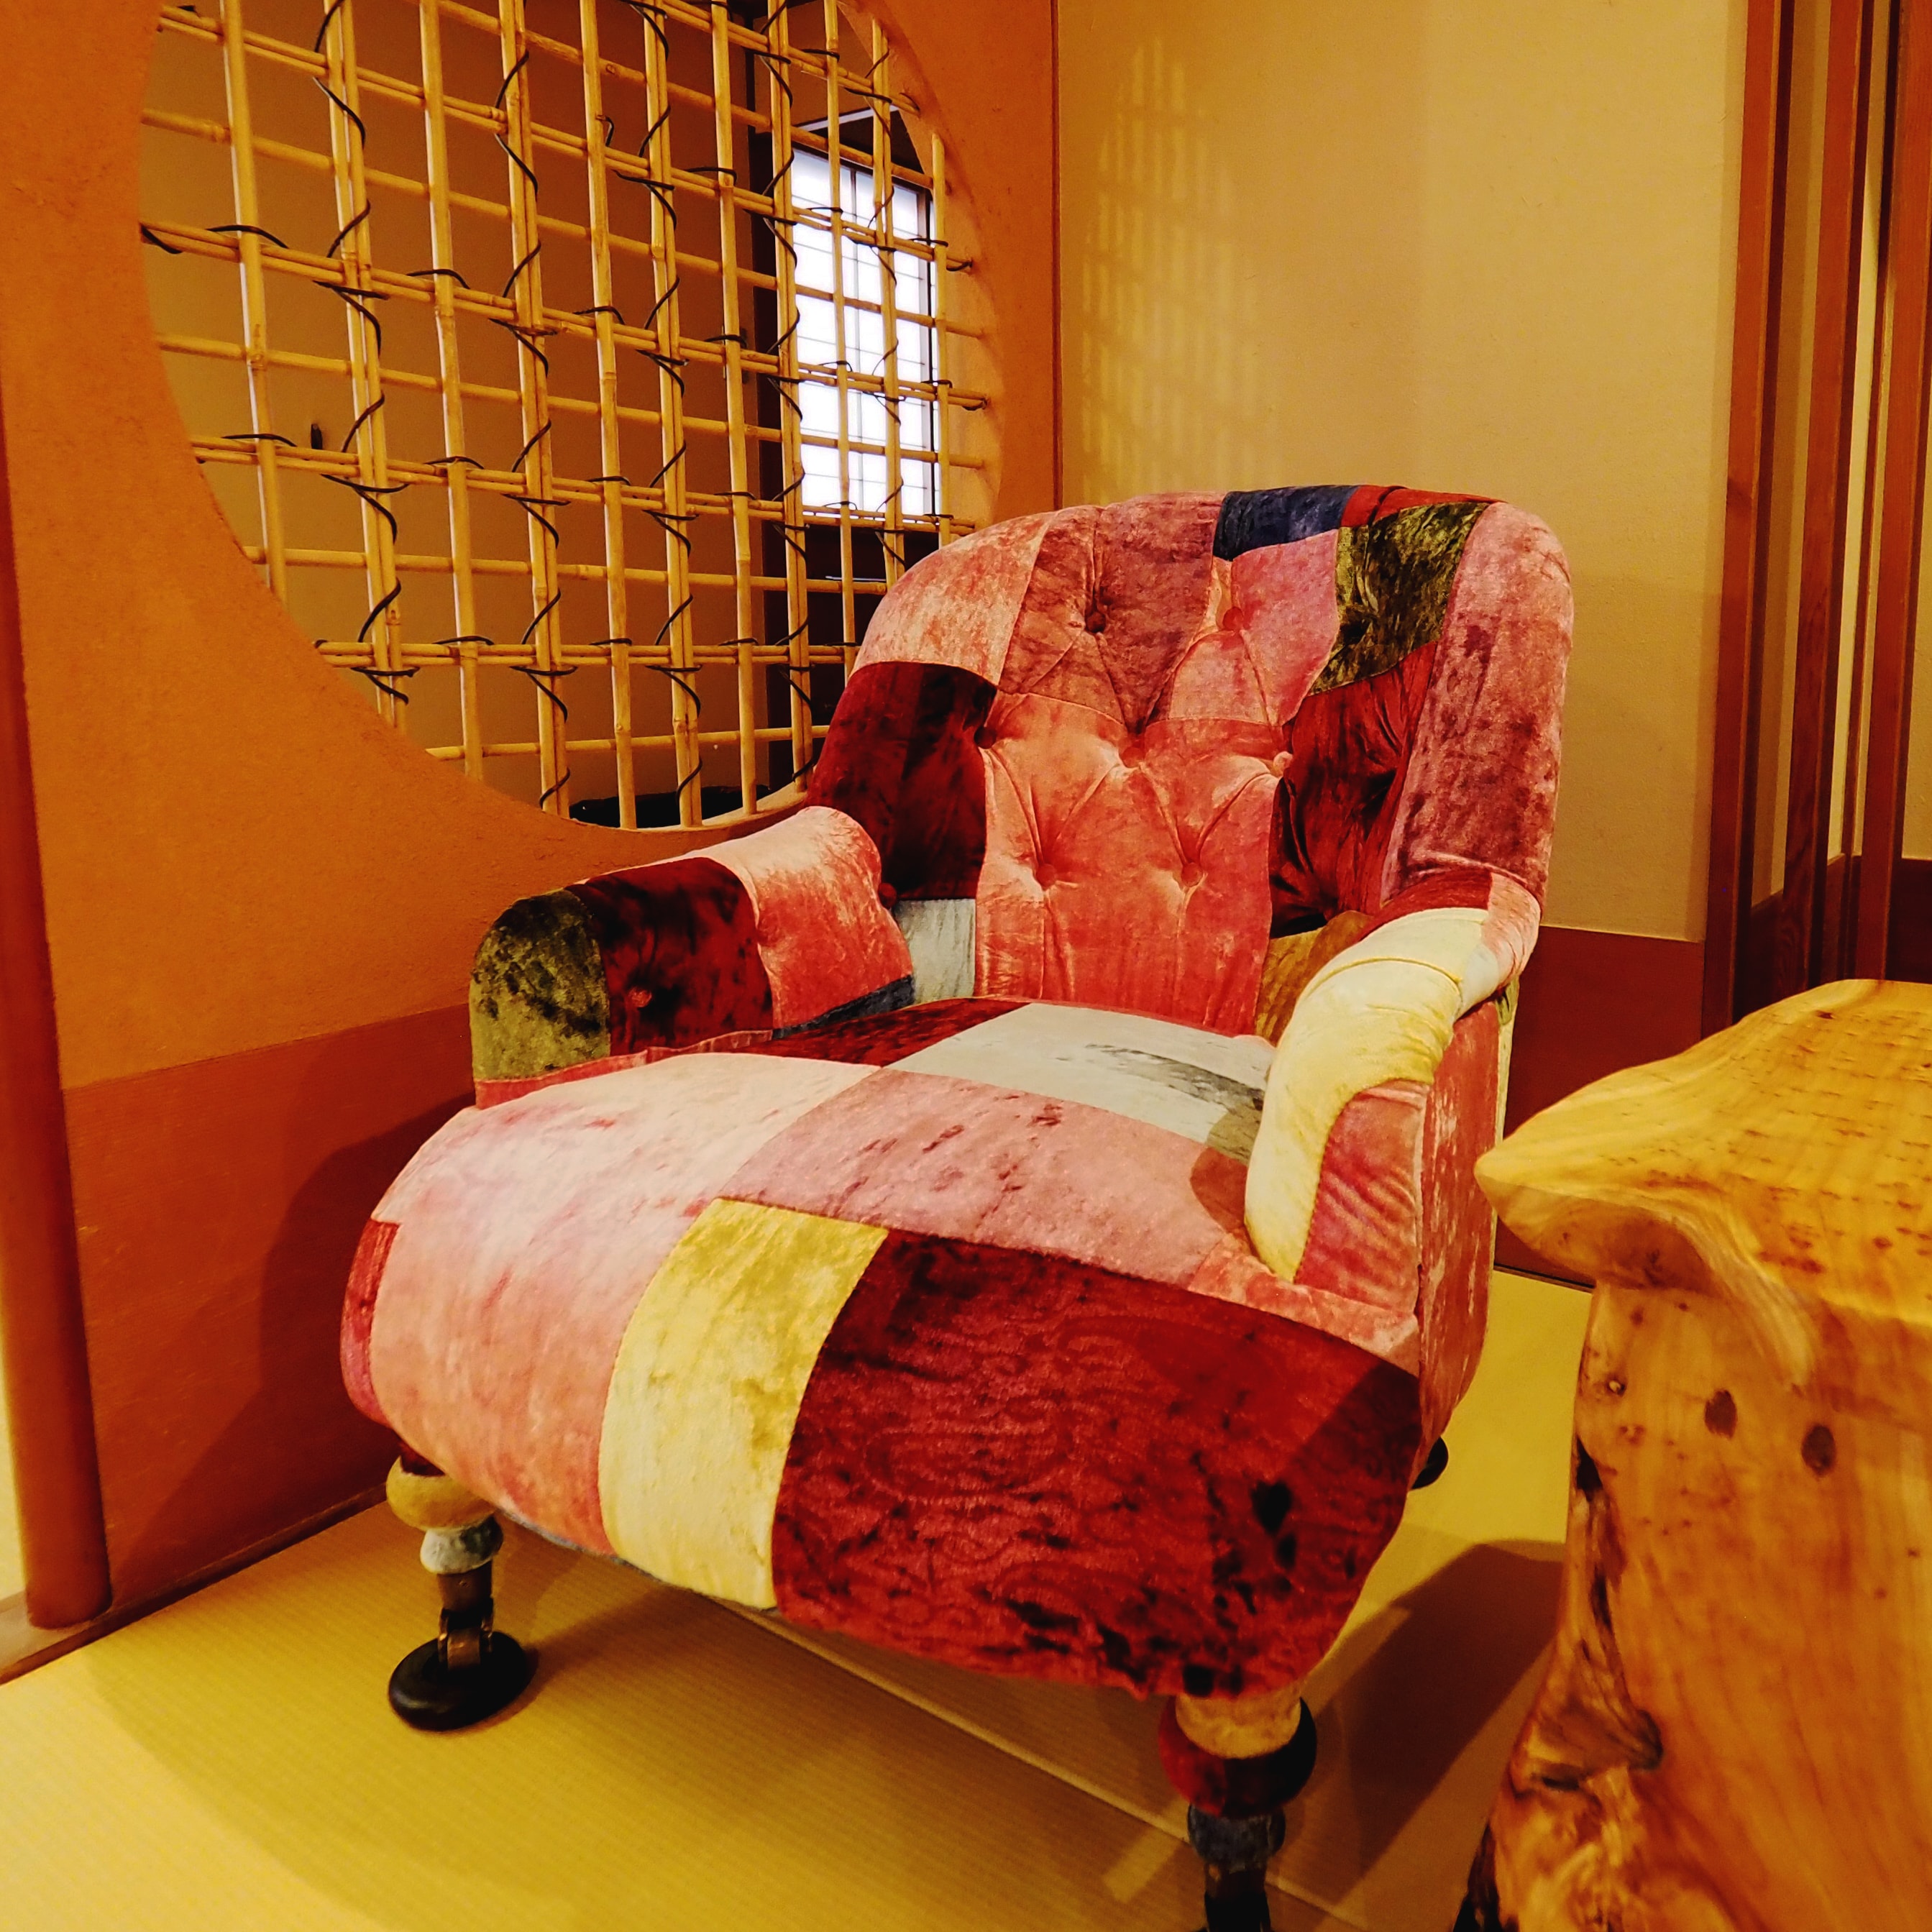 特別房間“金澤懷舊”18張榻榻米半雙人雙床房